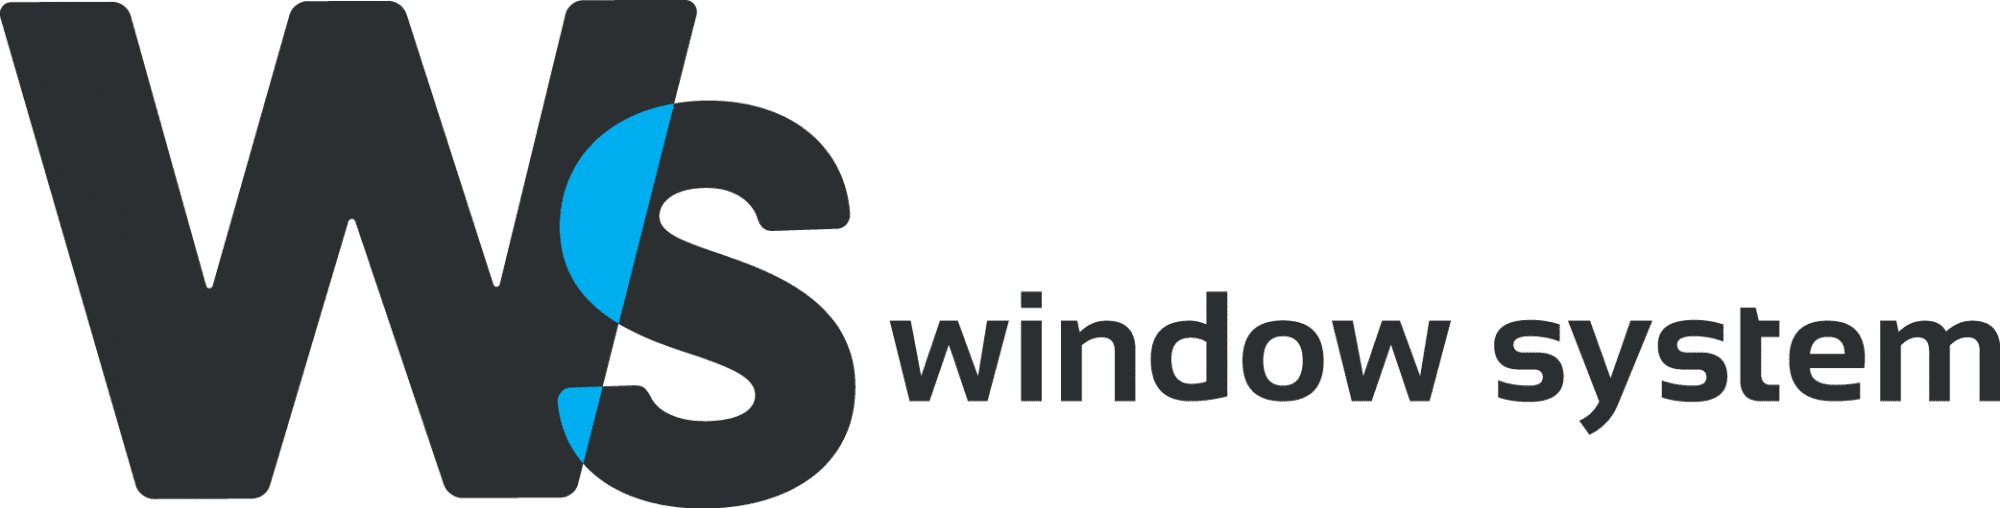 Window System (WS)